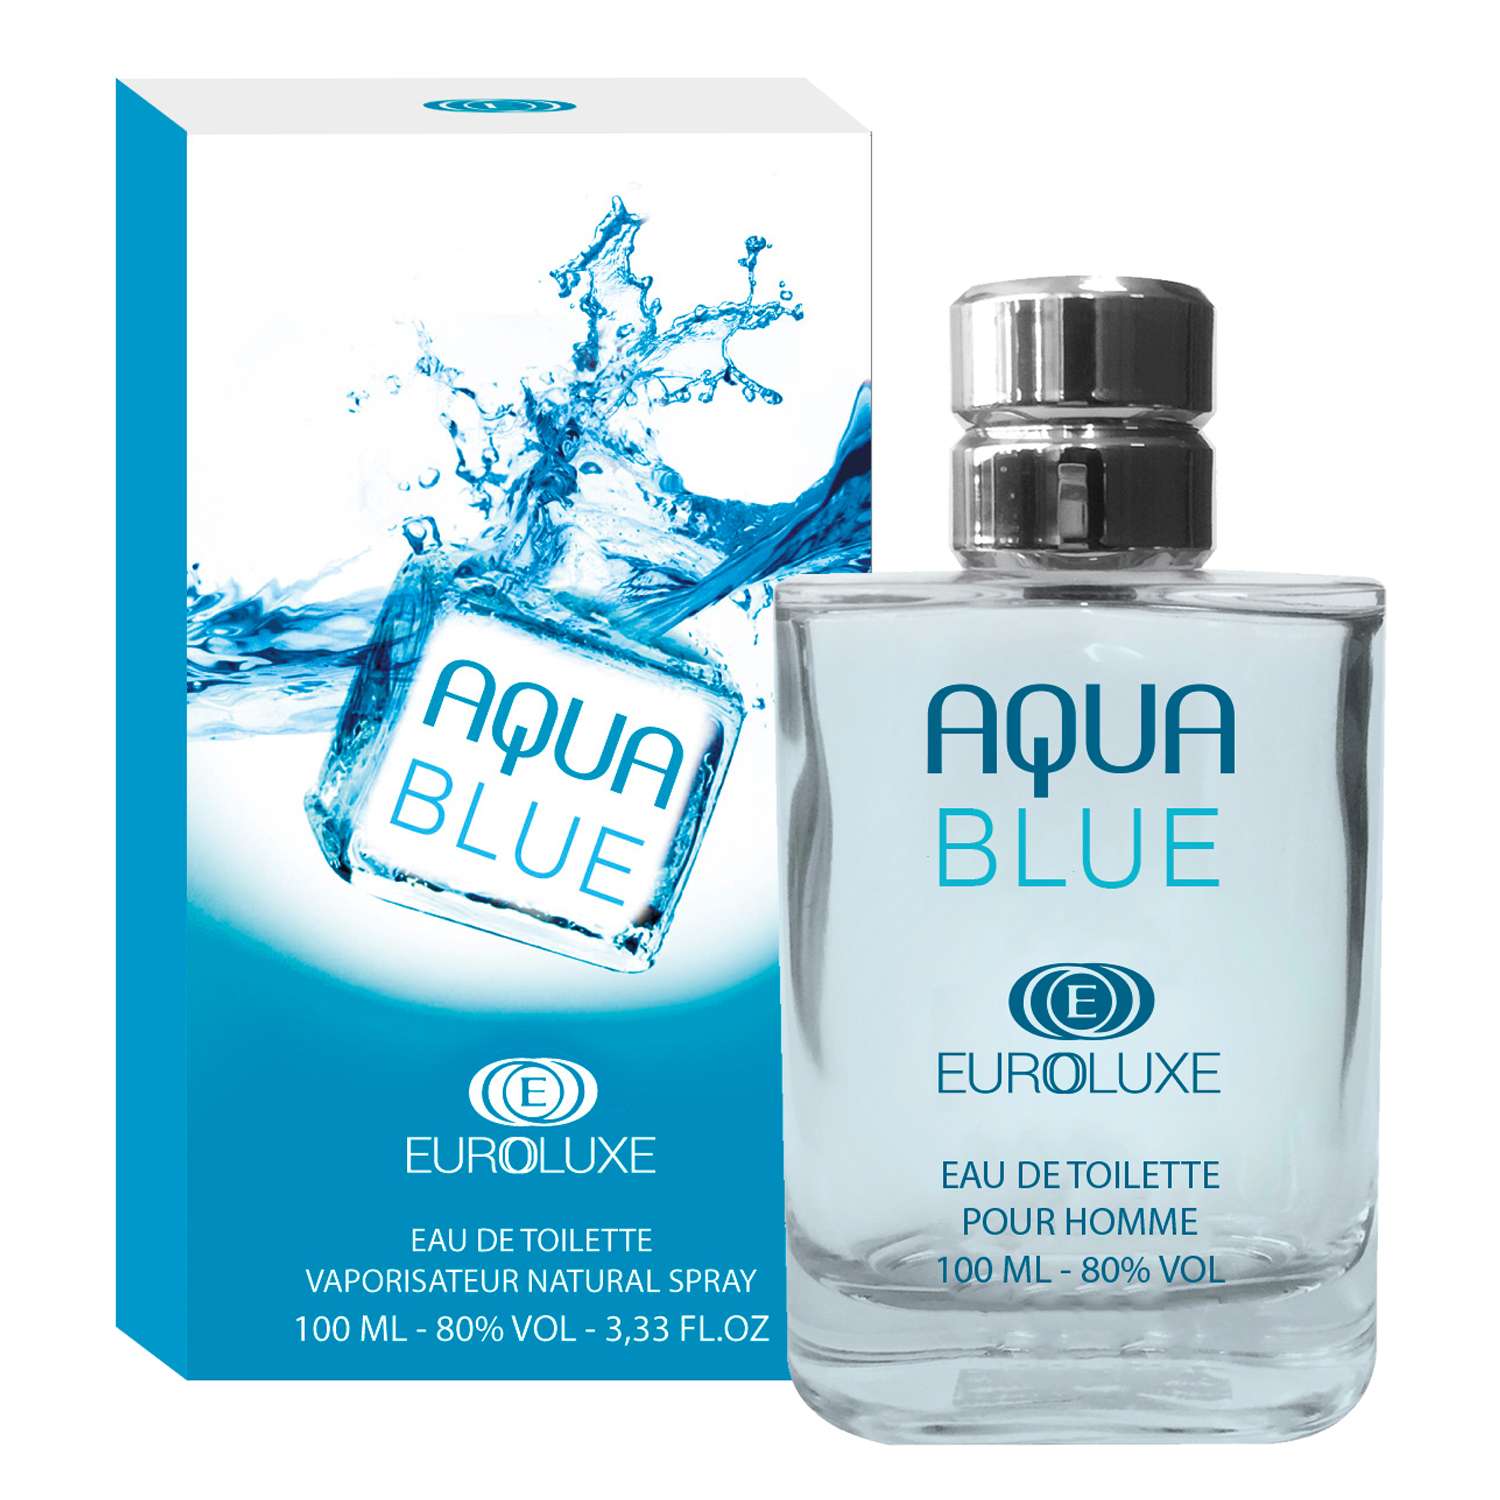 Туалетная мужская aqua. Туалетная вода Euroluxe 100 мл. Аква Блю духи мужские. Aqua Blue духи мужские. Туалетная вода Aqua Blue для мужчин.